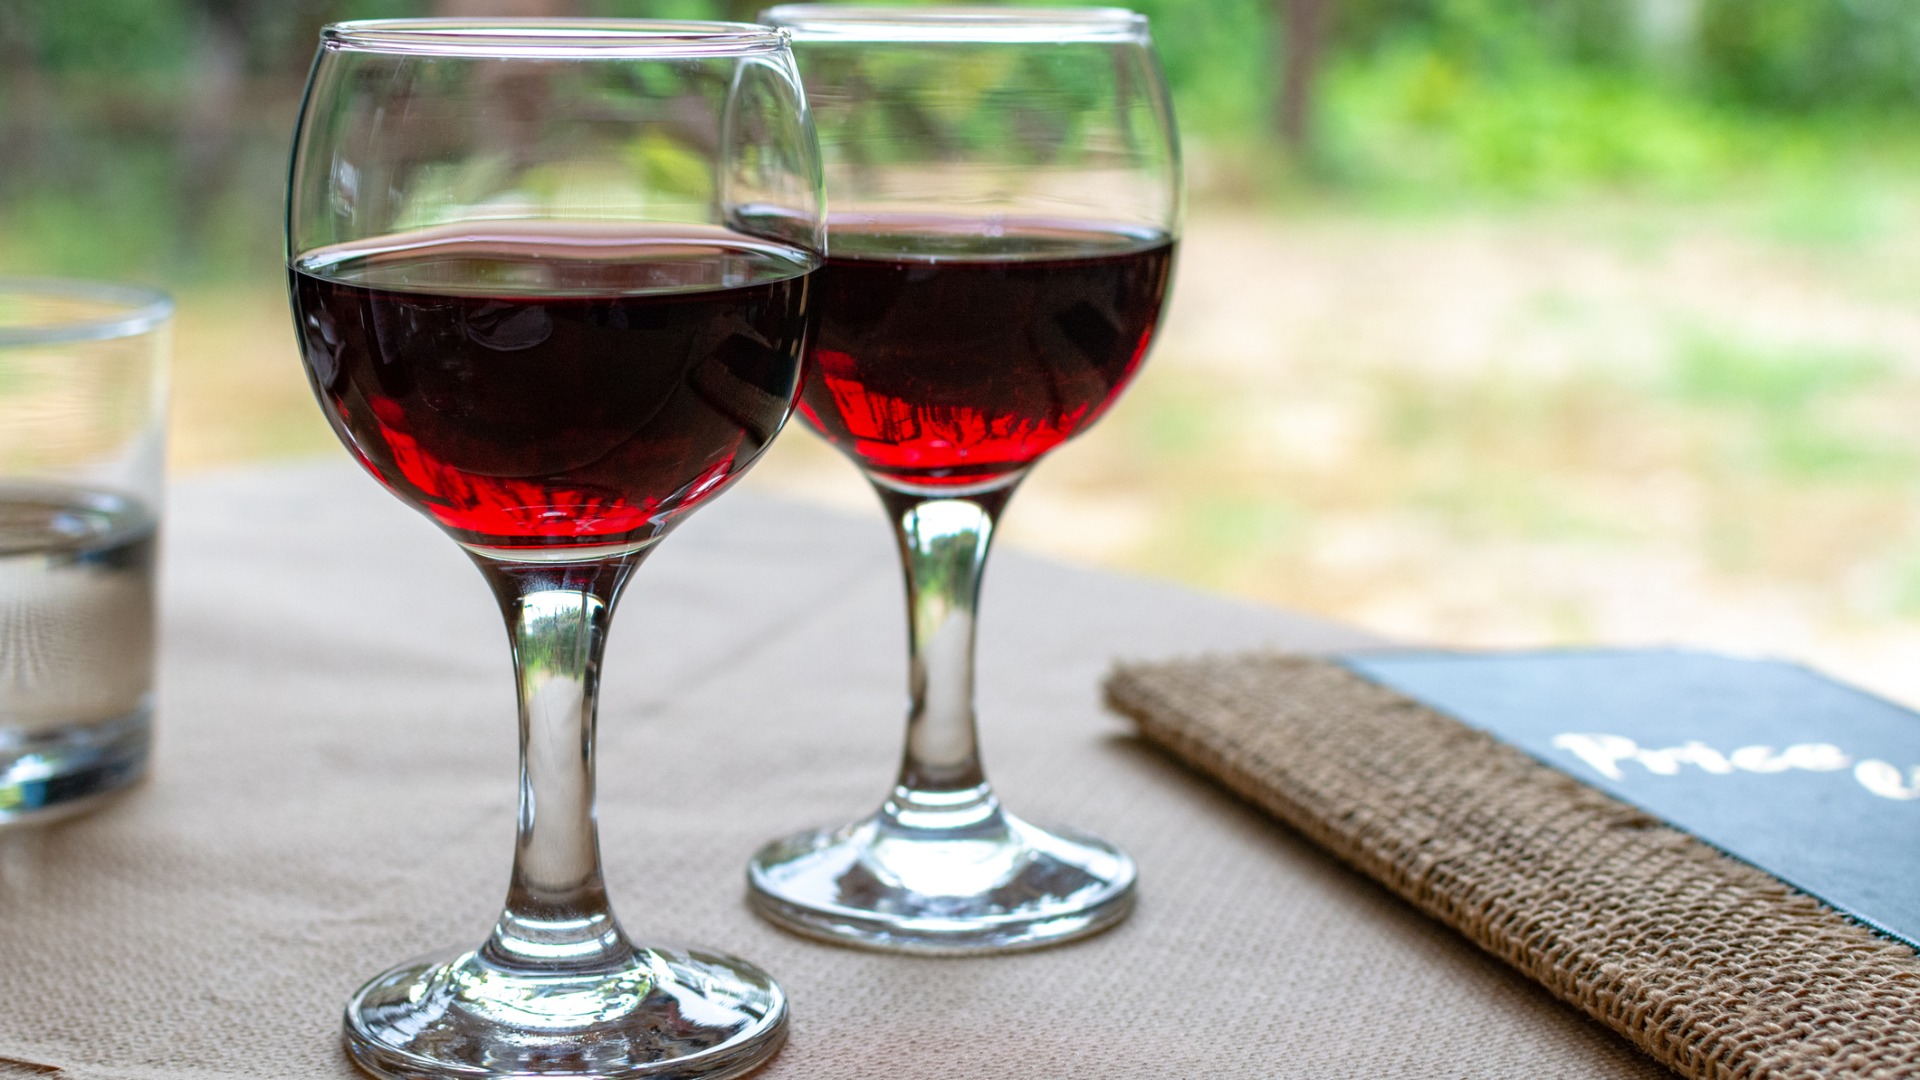 Este es un primer plano de dos vasos llenos de vino tinto Agiorgitiko.  Agiorgitiko es uno de los mejores vinos griegos. 